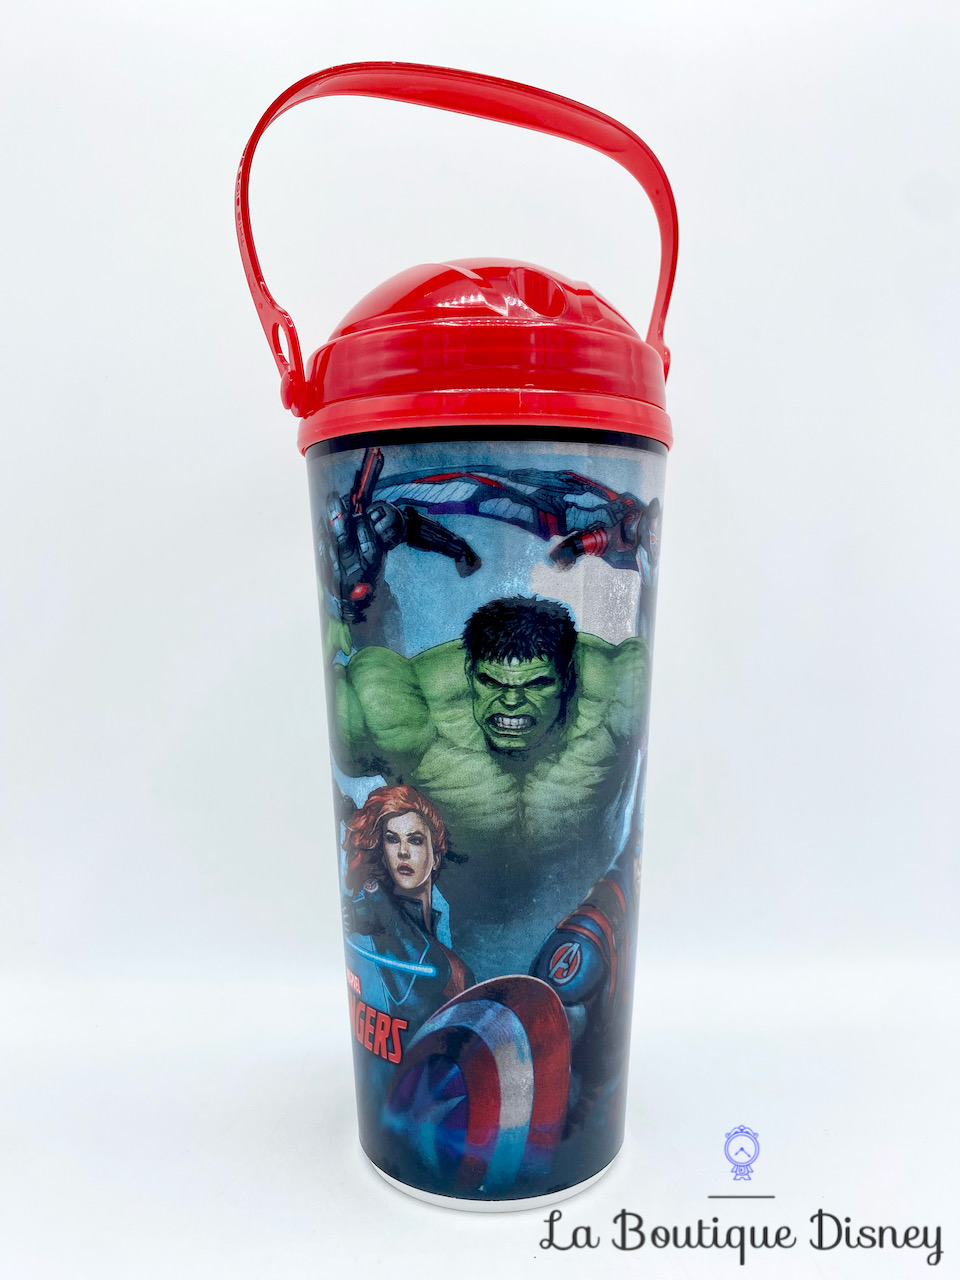 Verre Paille Avengers Marvel Disney Parks Disneyland gobelet plastique Iron Man Captain America Hulk